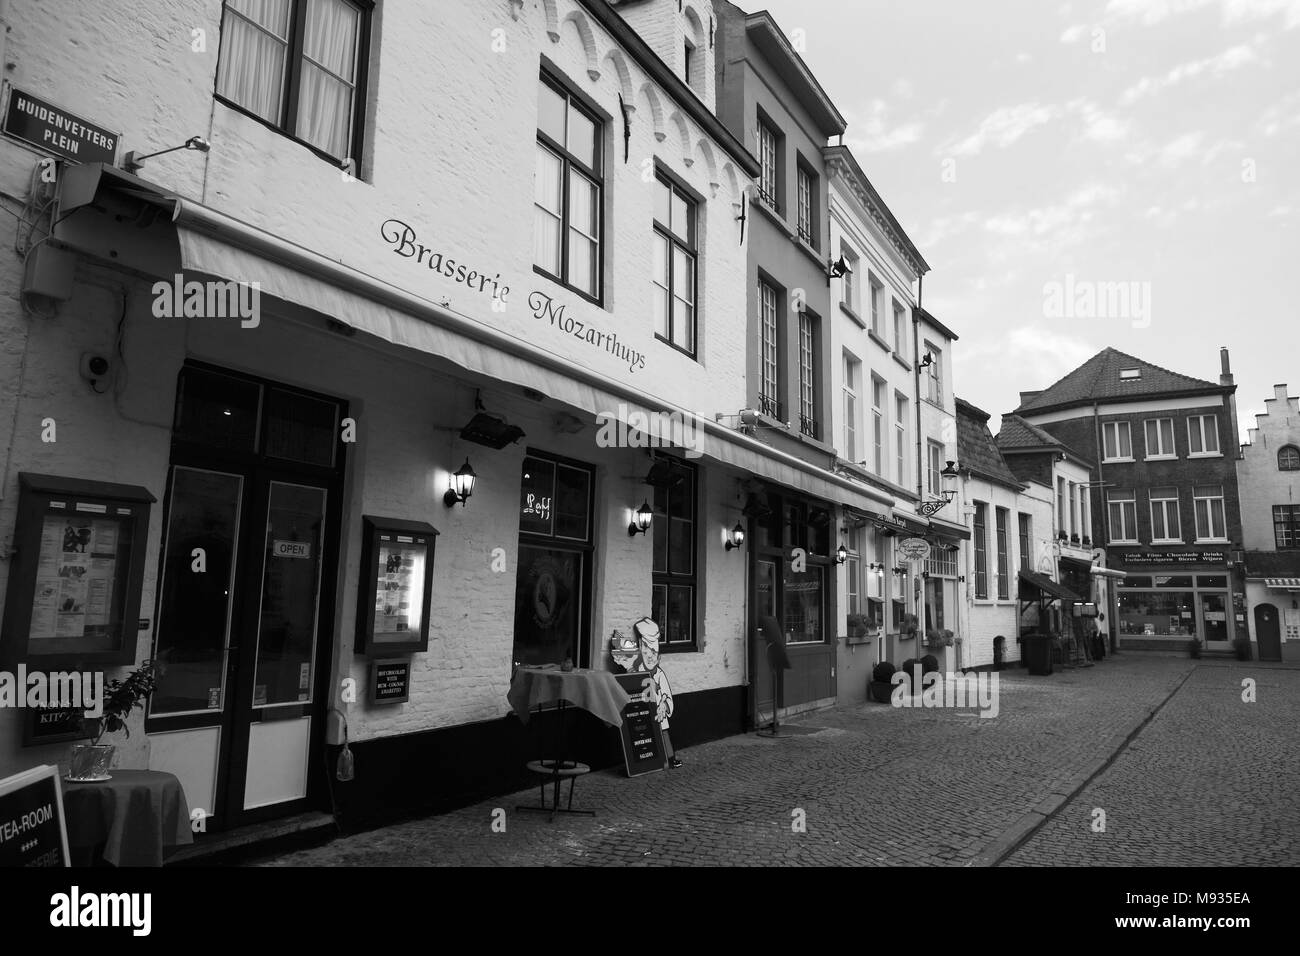 Huidenvettersplein, Brügge, Belgien: Die Brasserie 't Mozarthuys und andere Restaurants auf dem zauberhaften kleinen Platz. Schwarz-weiße Version Stockfoto